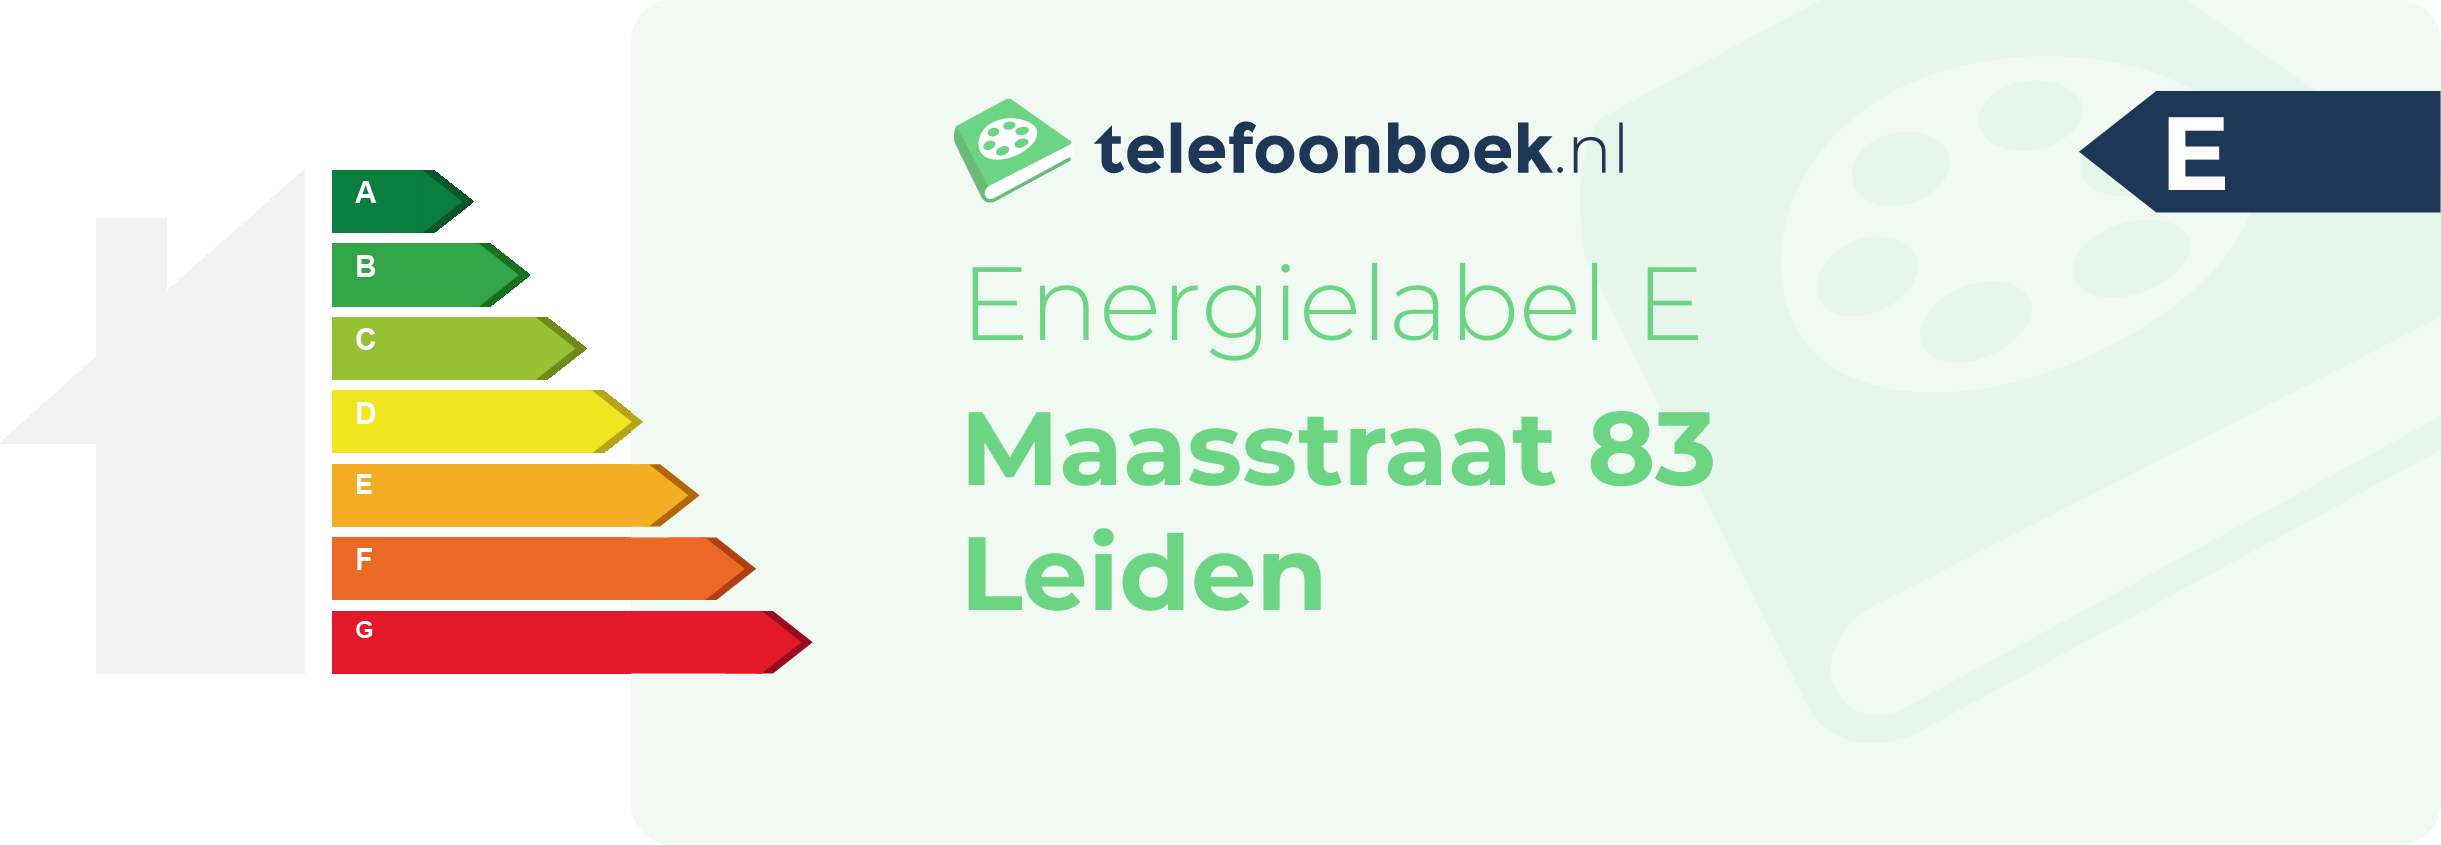 Energielabel Maasstraat 83 Leiden